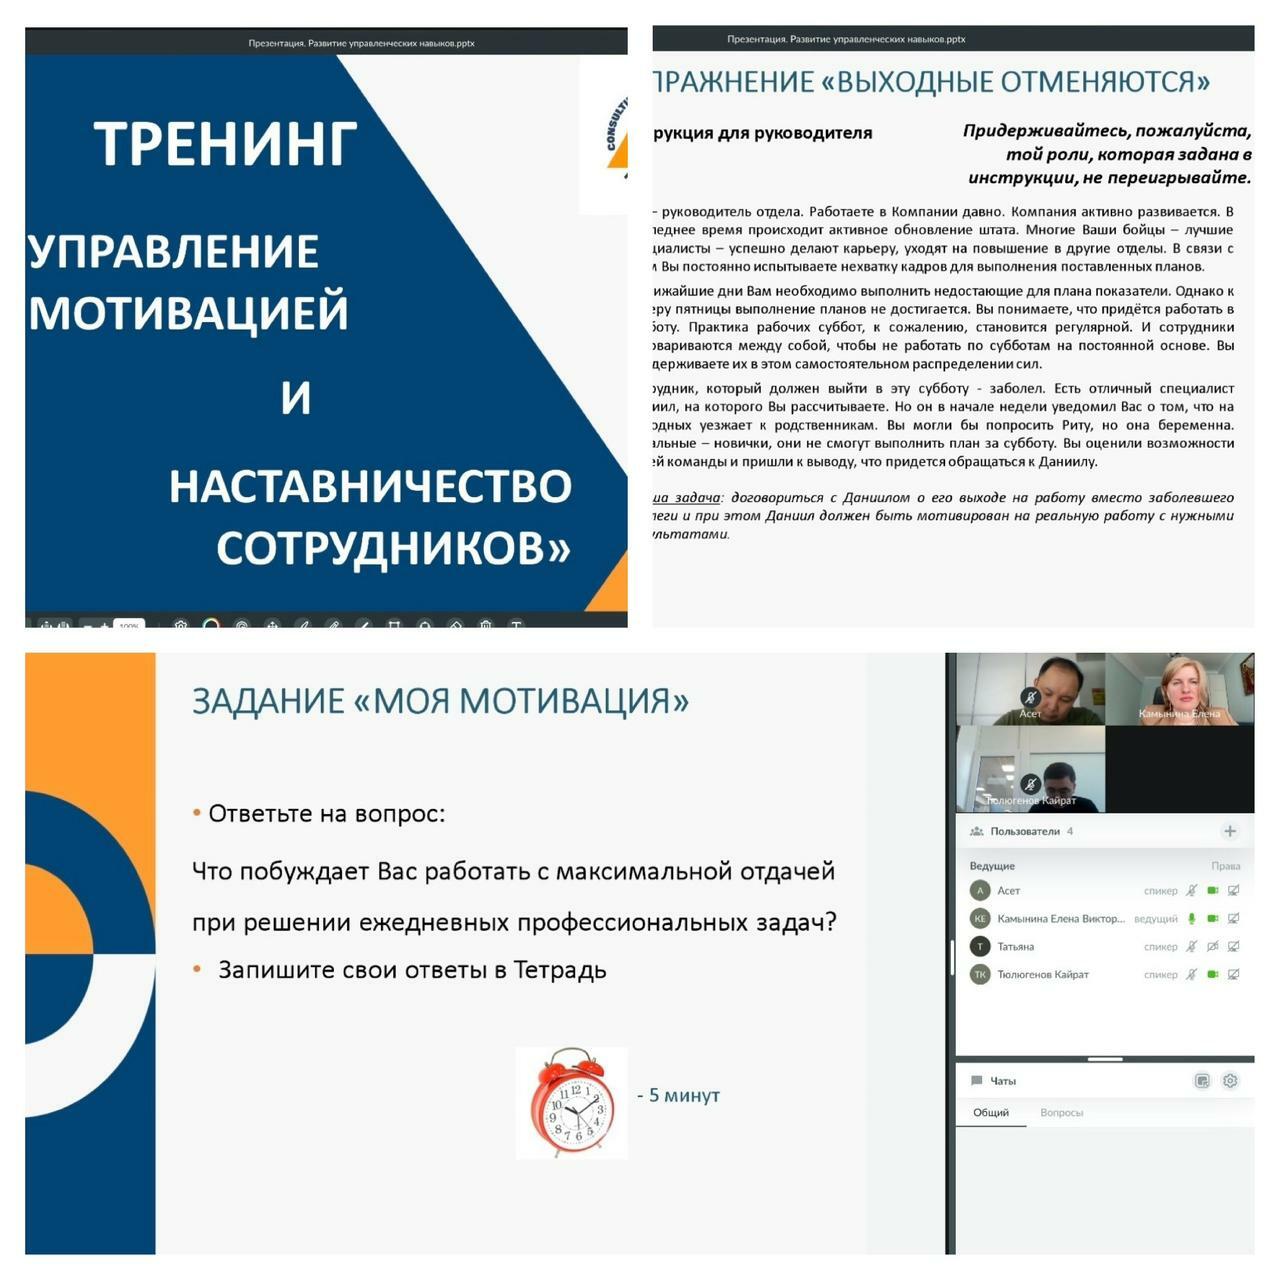 📌 16 марта проведен онлайн-тренинг для руководителей Объединения юридических лиц в форме союза «Национальной палаты коллекторов Казахстана» по программе:&nbsp; &nbsp; &nbsp; &nbsp; &nbsp; &nbsp; &nbsp; &nbsp; &nbsp;«Управление мотивацией и наставничество сотрудников»    